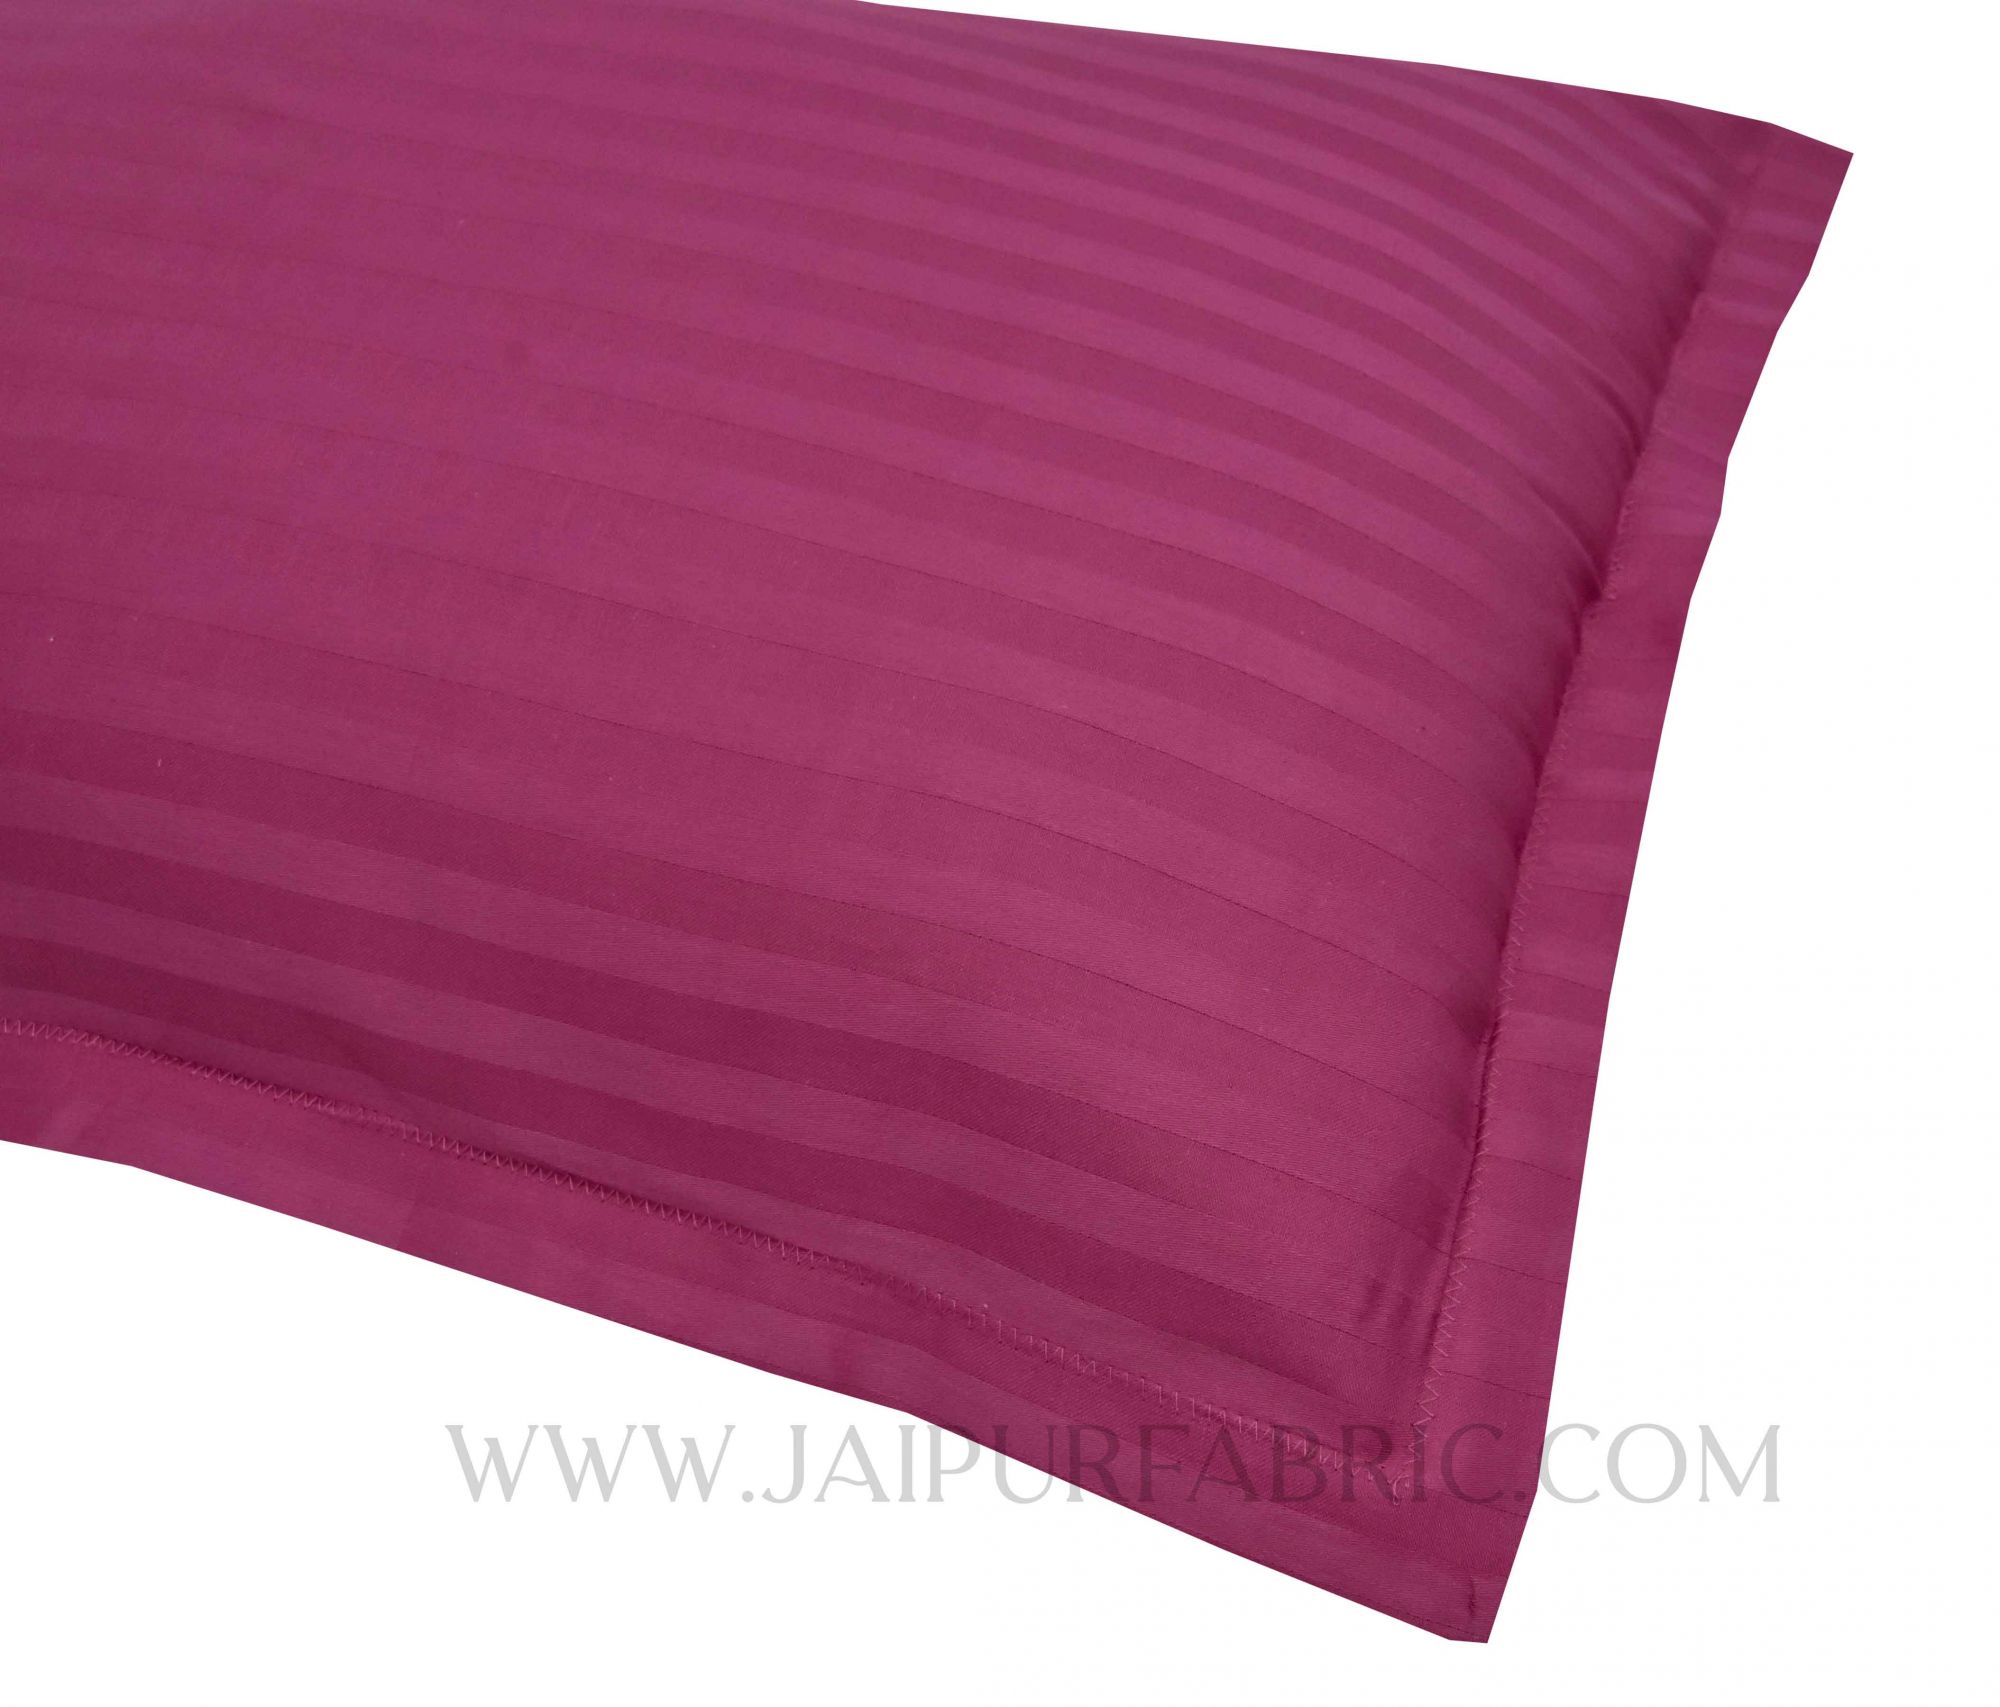 Mauve Color Pillow Cover Pair